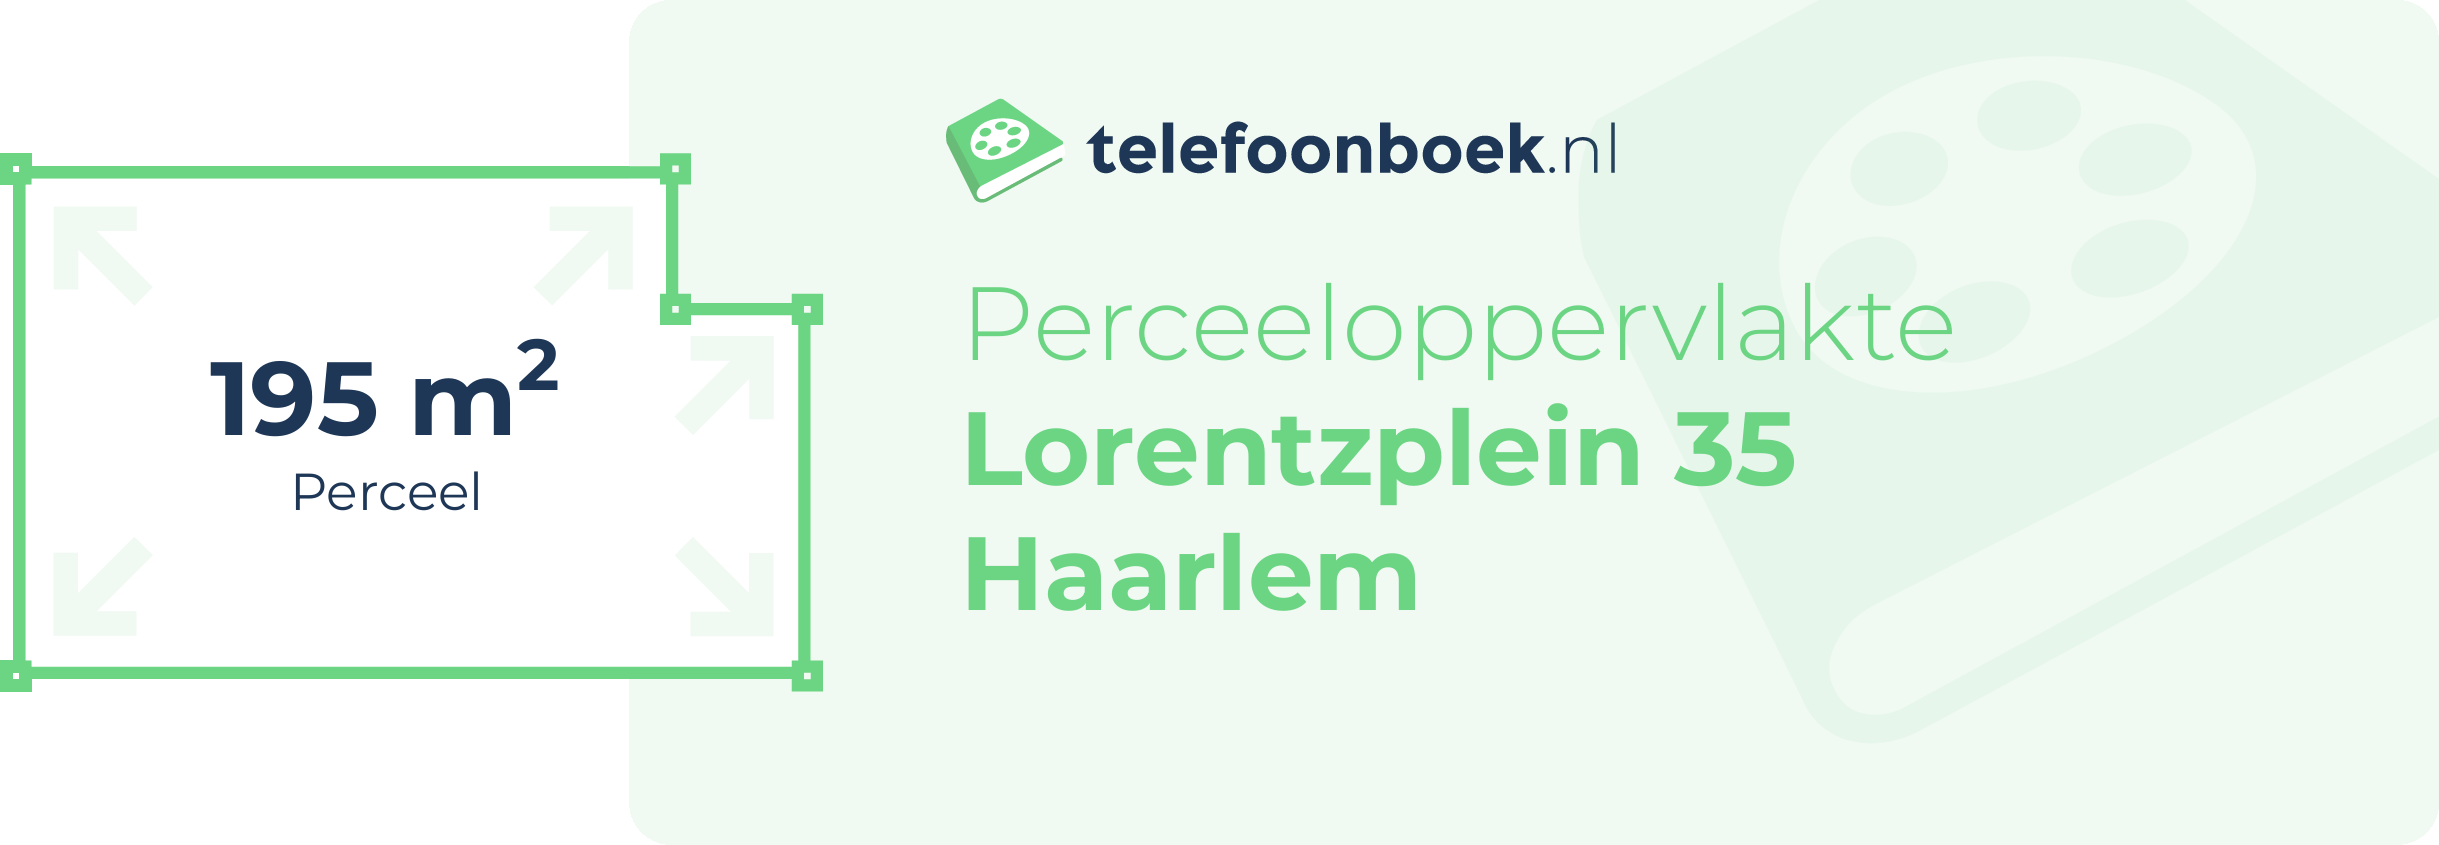 Perceeloppervlakte Lorentzplein 35 Haarlem